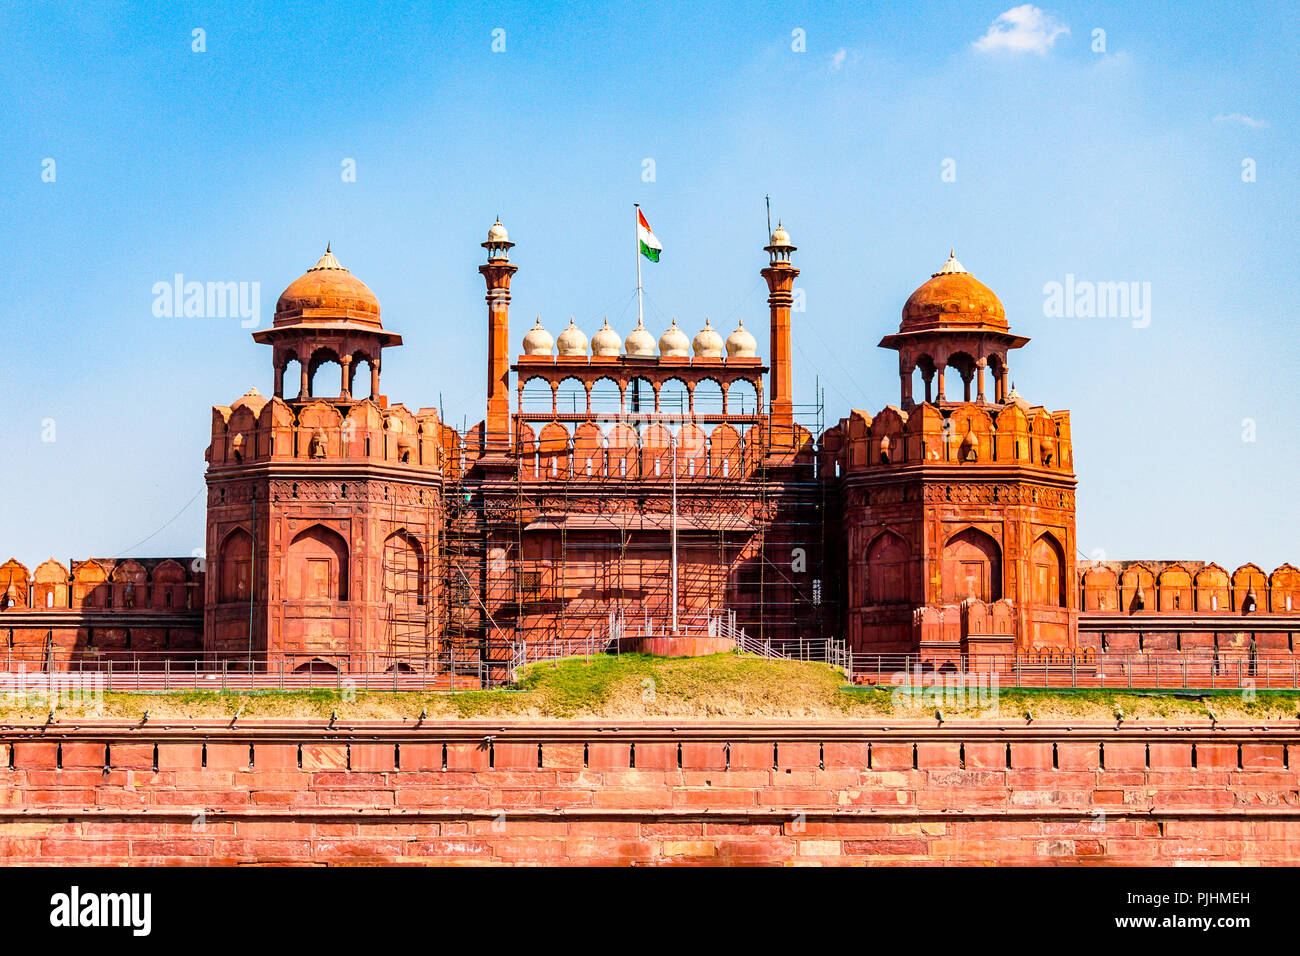 Red Fort(Lal Qila) - Sito del Patrimonio Mondiale. Si tratta di un forte storico nella città di Delhi in India. Foto Stock